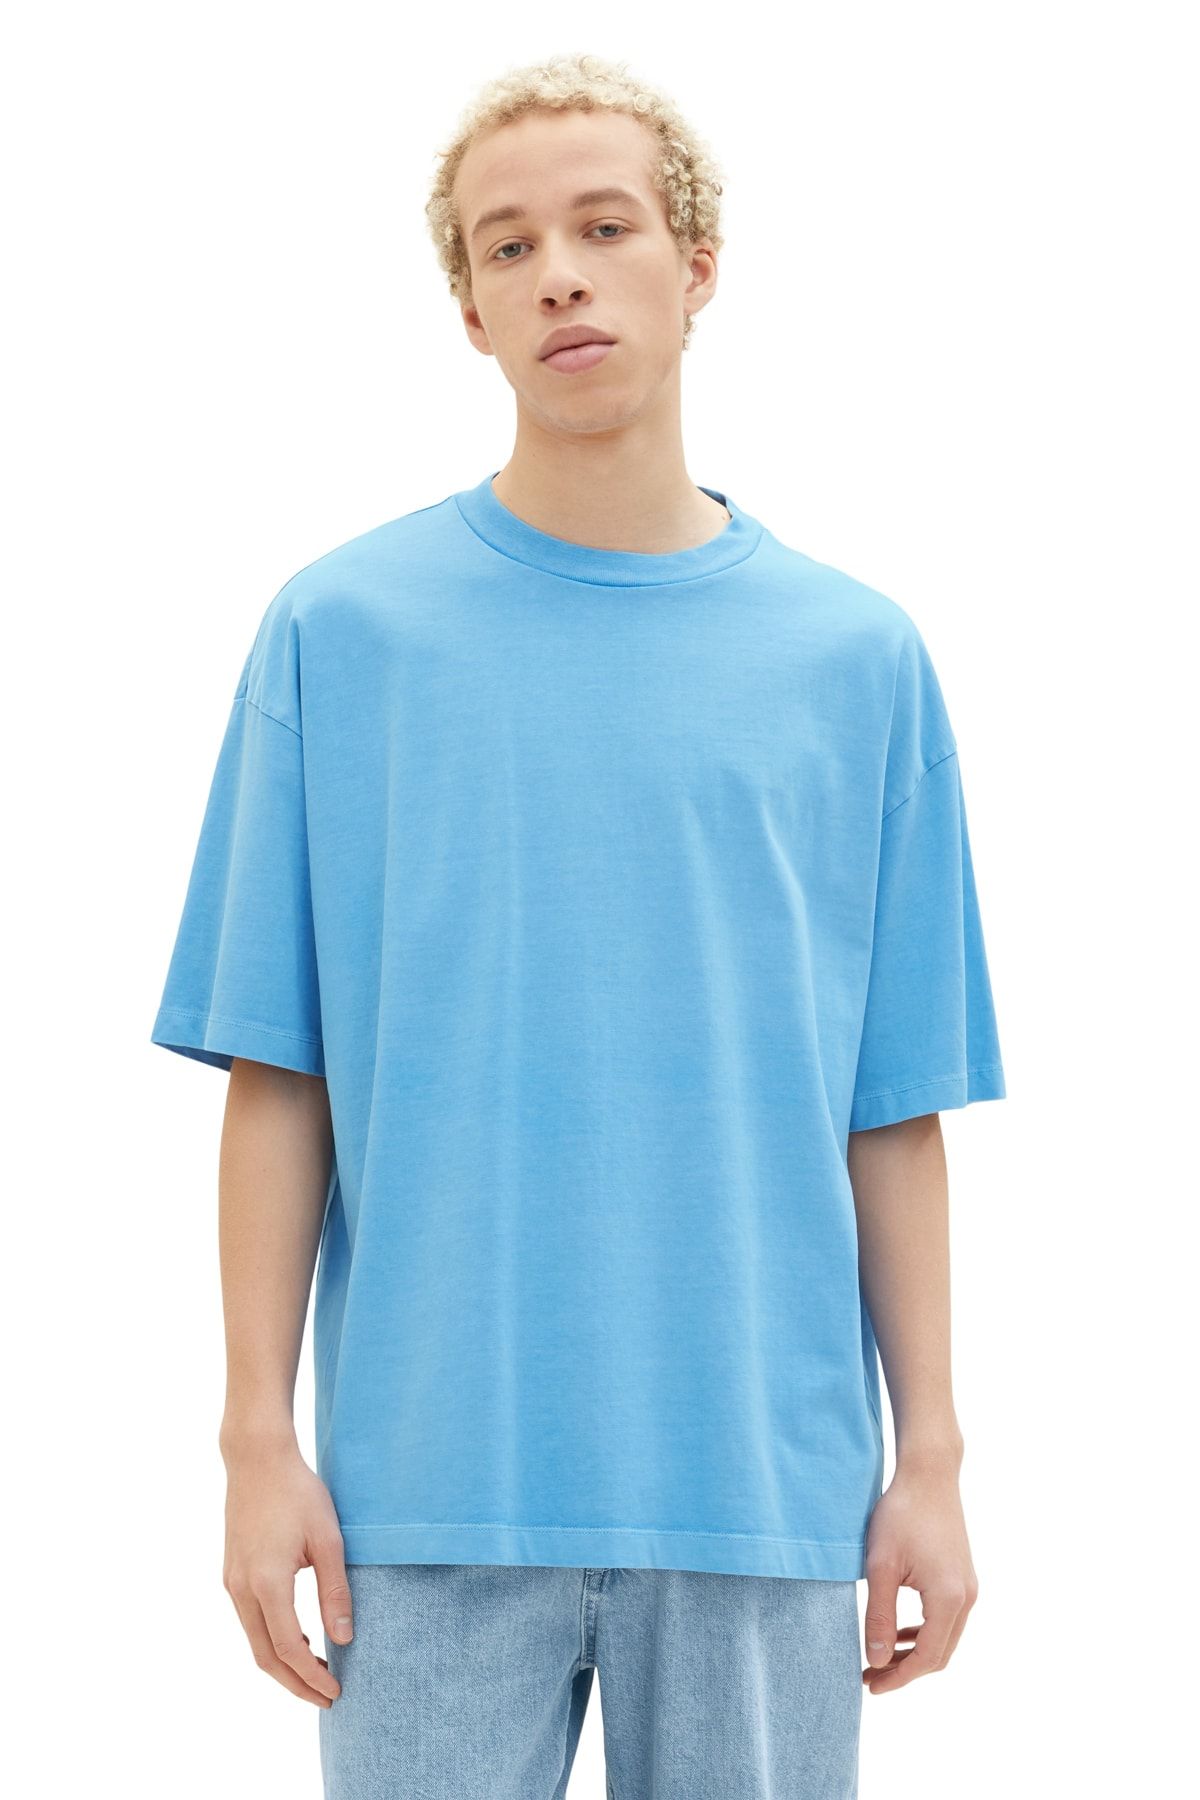 Tom Tailor Denim Men\'s blue sky T-Shirt rainy - Trendyol